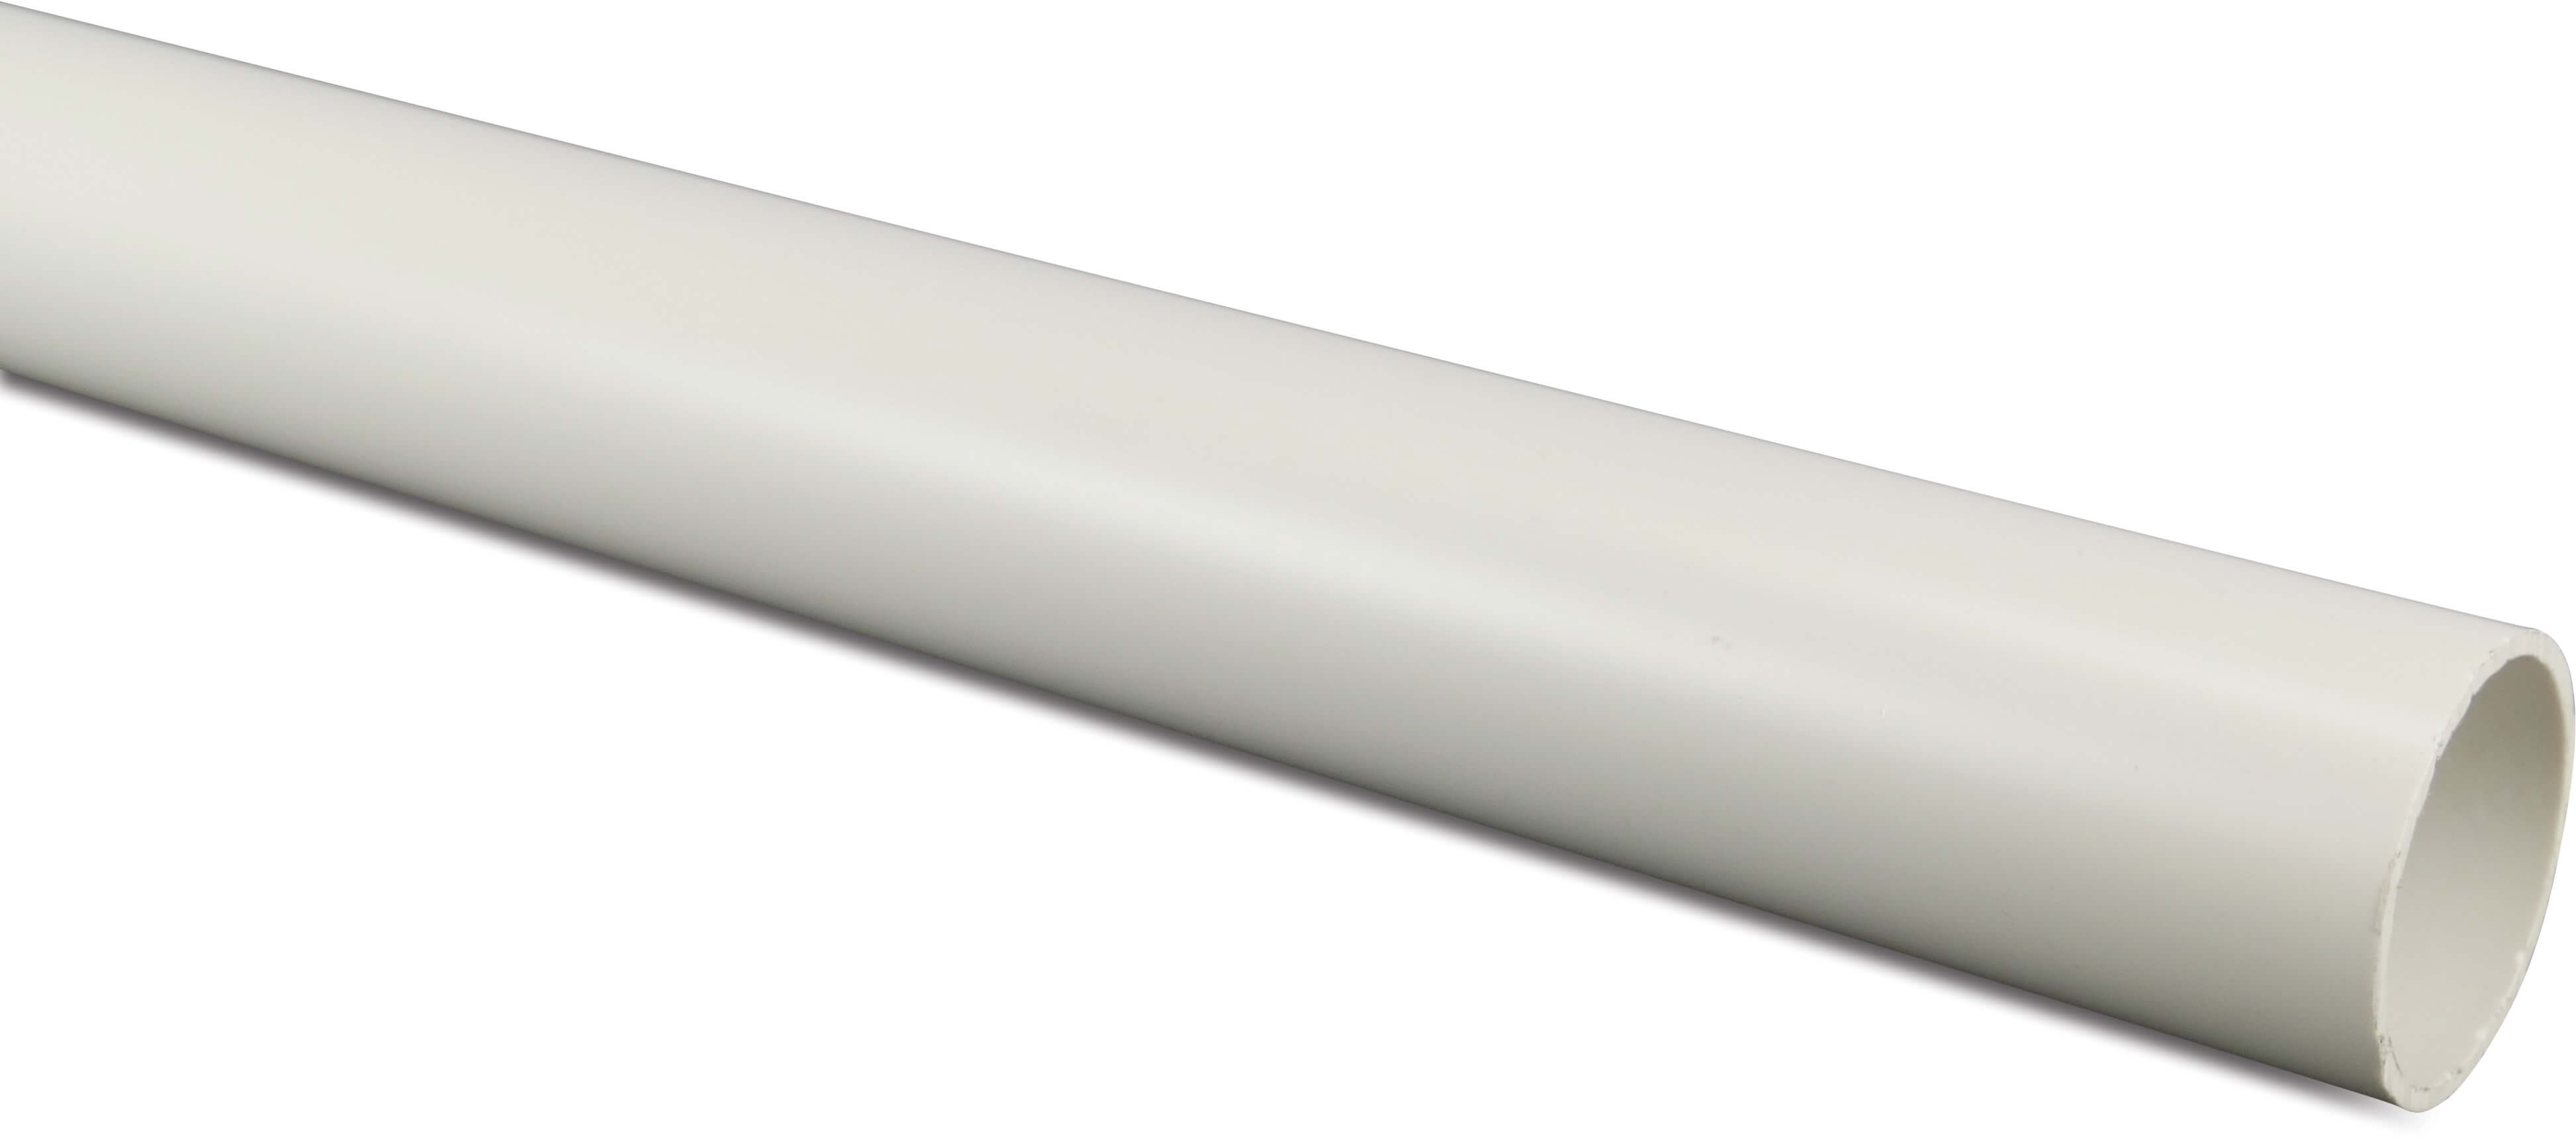 Pressure pipe PVC-U 1 1/2" x 2,5 mm plain Class D-PN12 white 1m